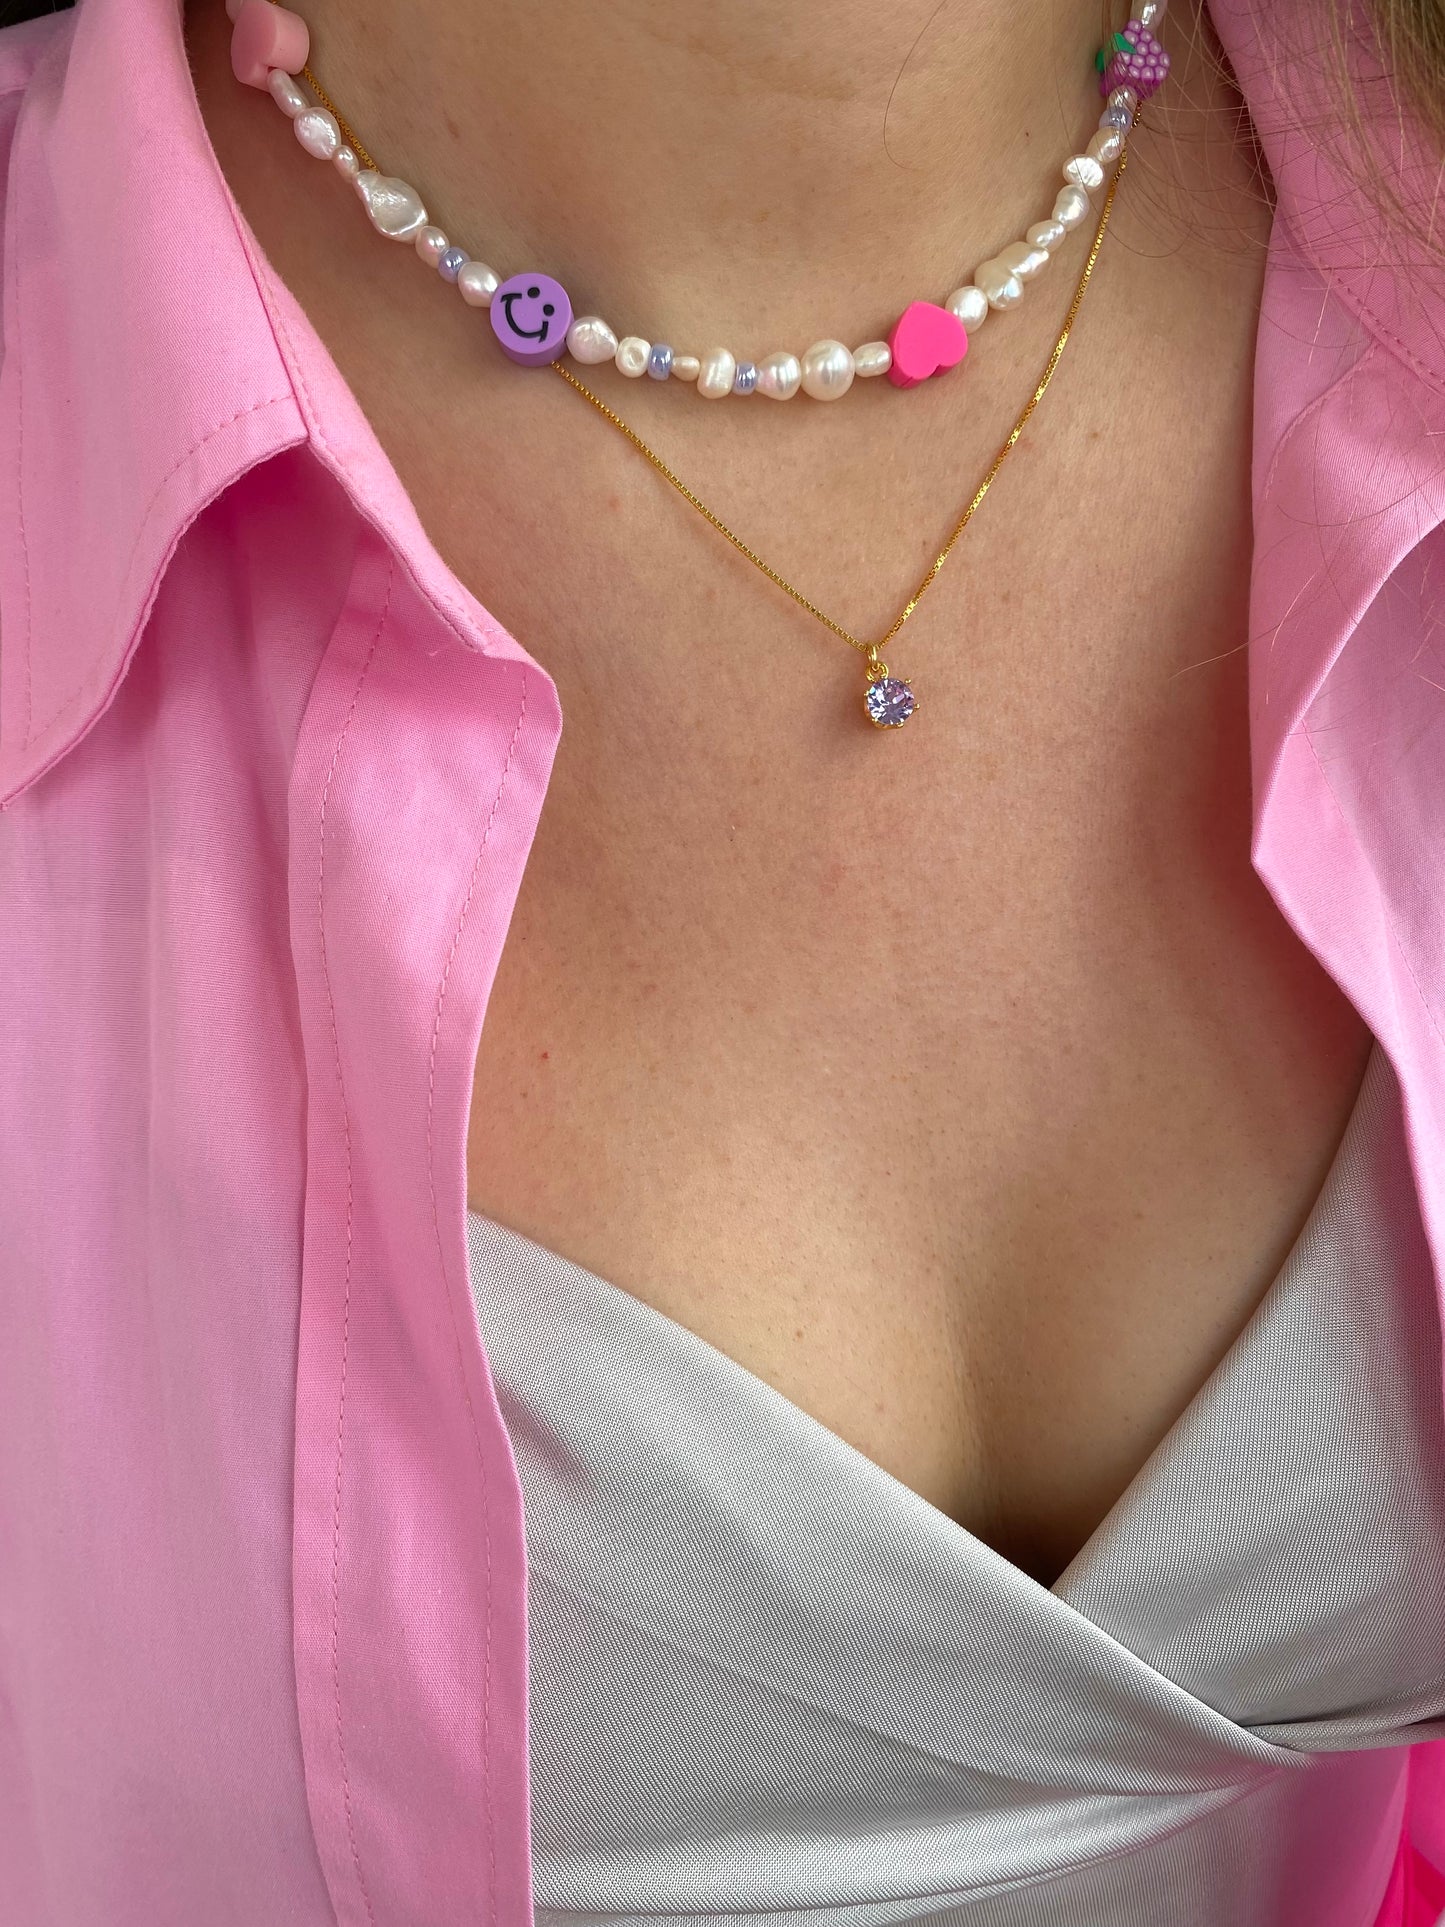 Violet fever necklace